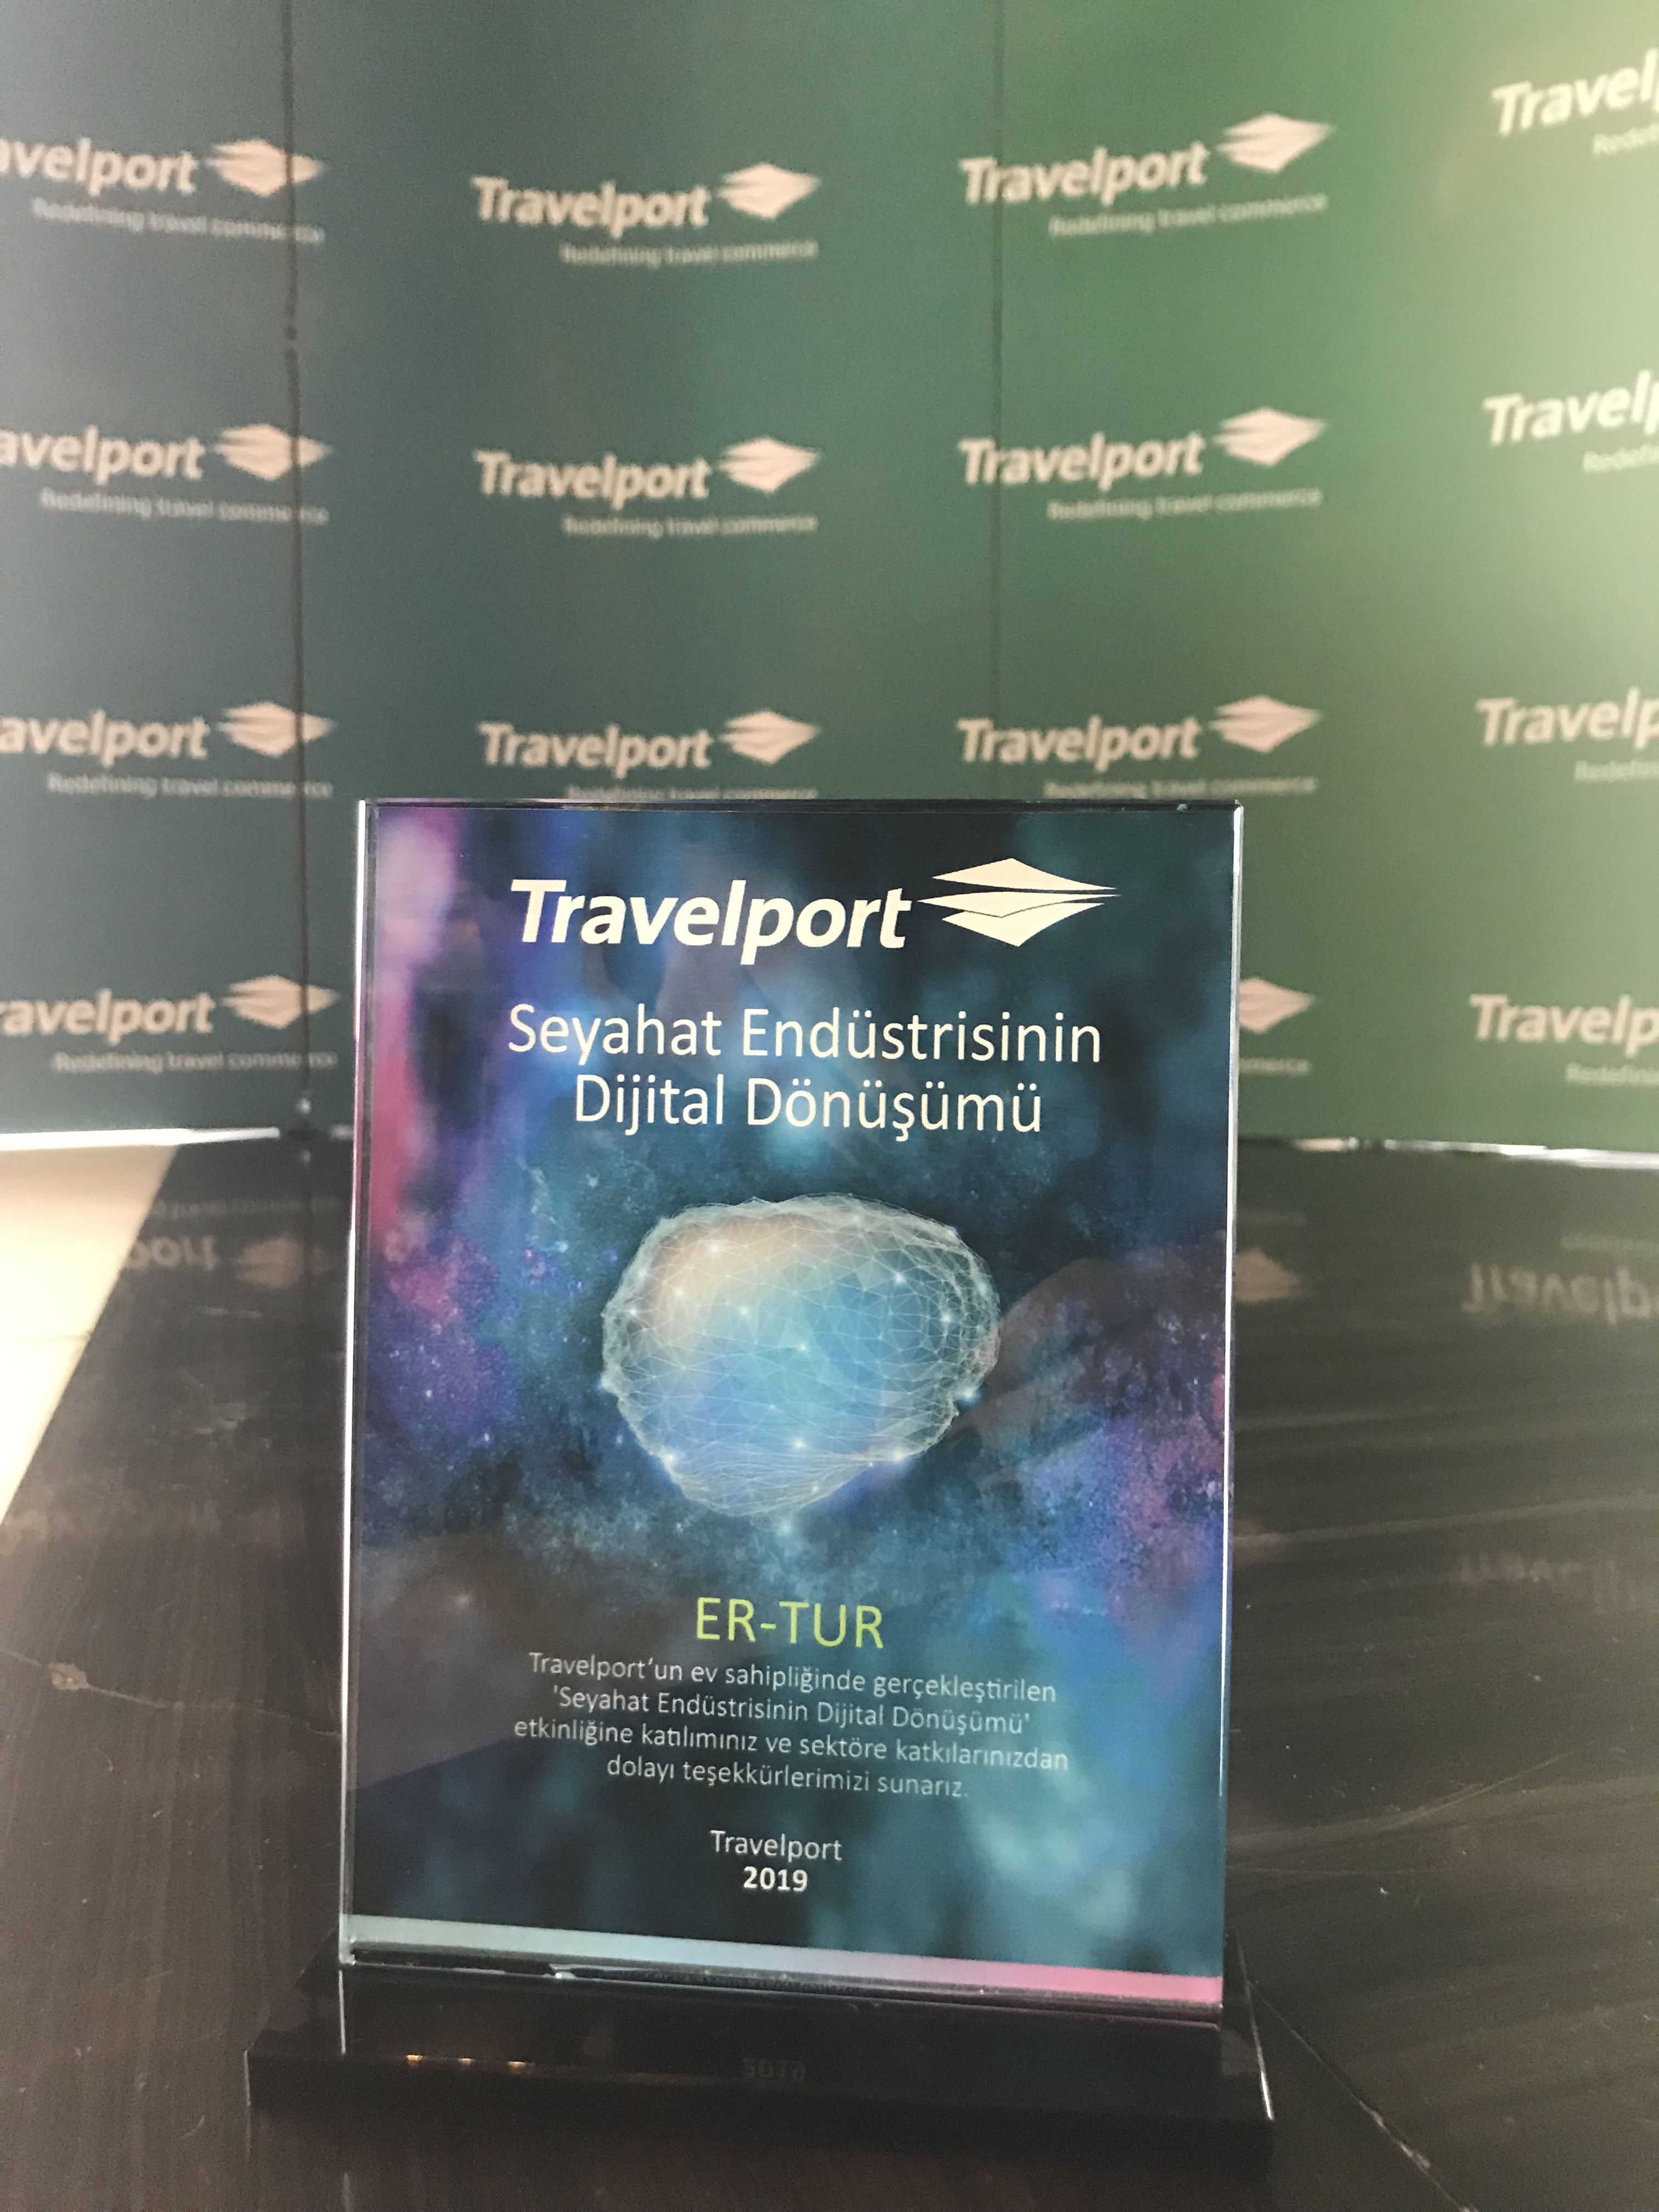 2019 İSTANBUL - Travelport Seyahat Endüstrisinin Dijital Dönüşümü